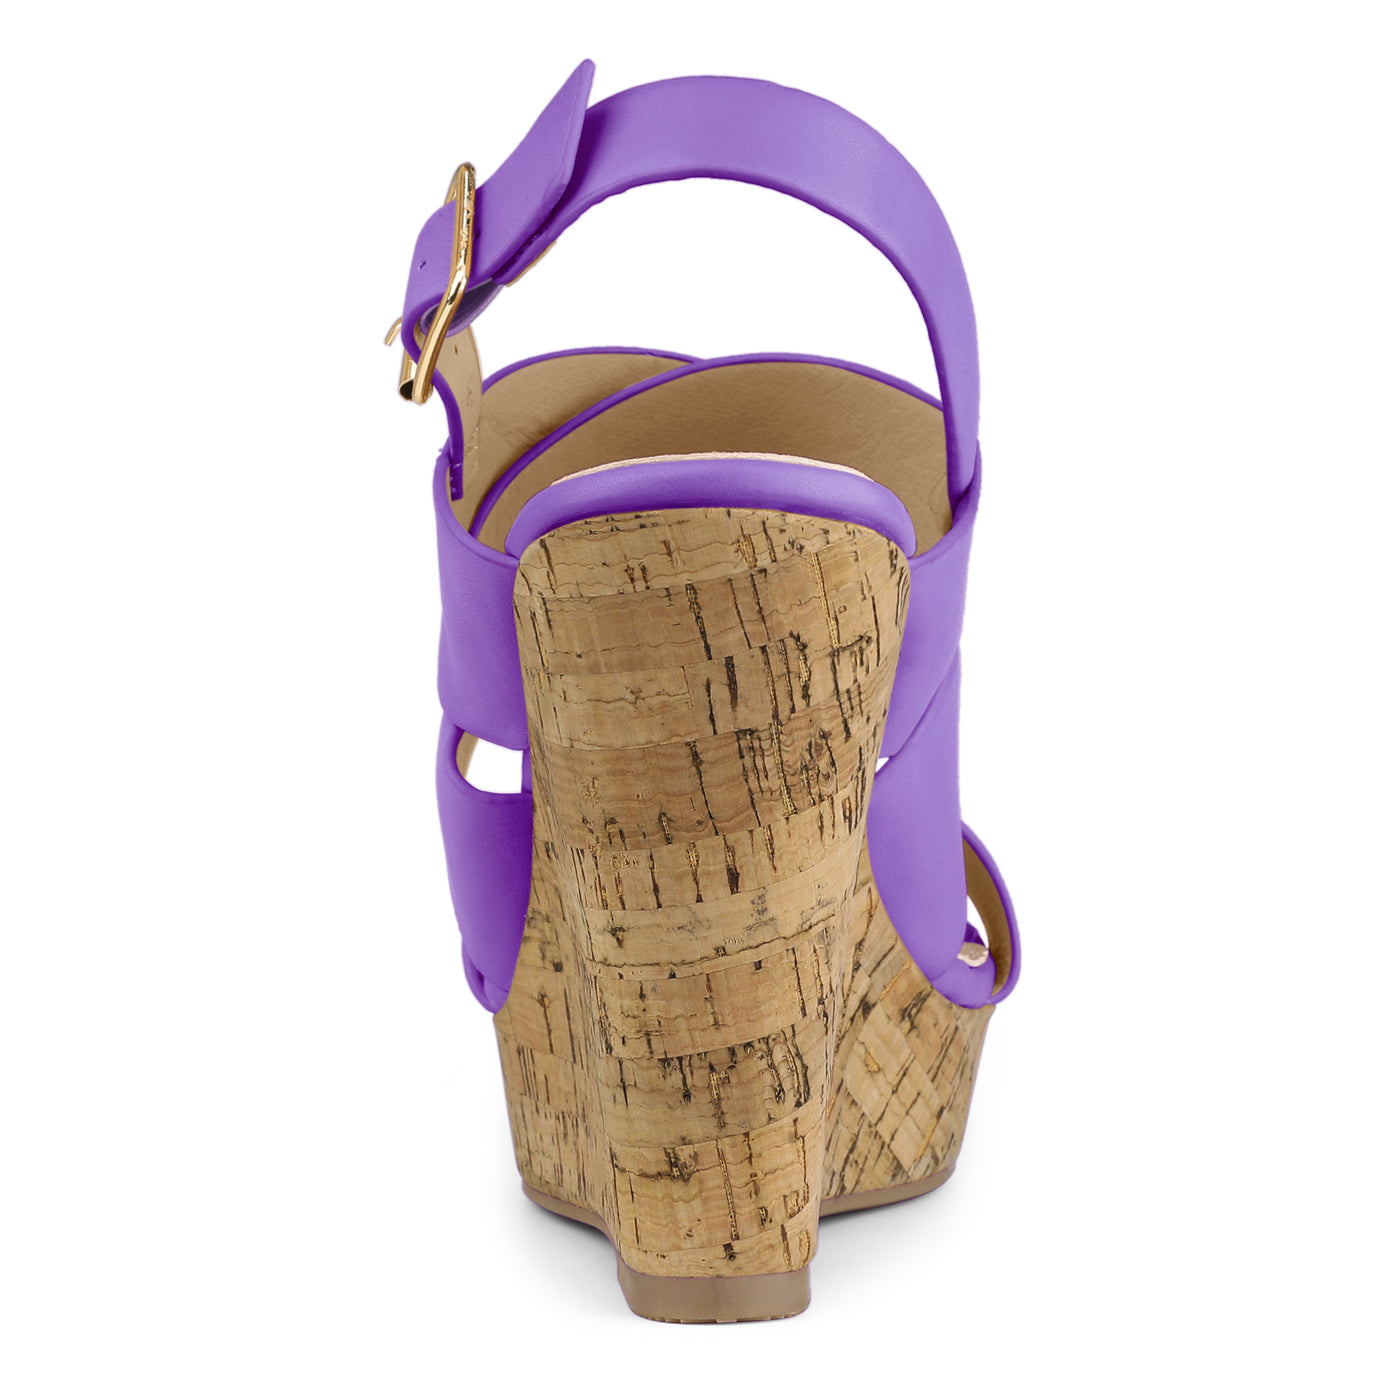 Allegra K Solid Straps Wood Platform Wedge Slingback Sandals